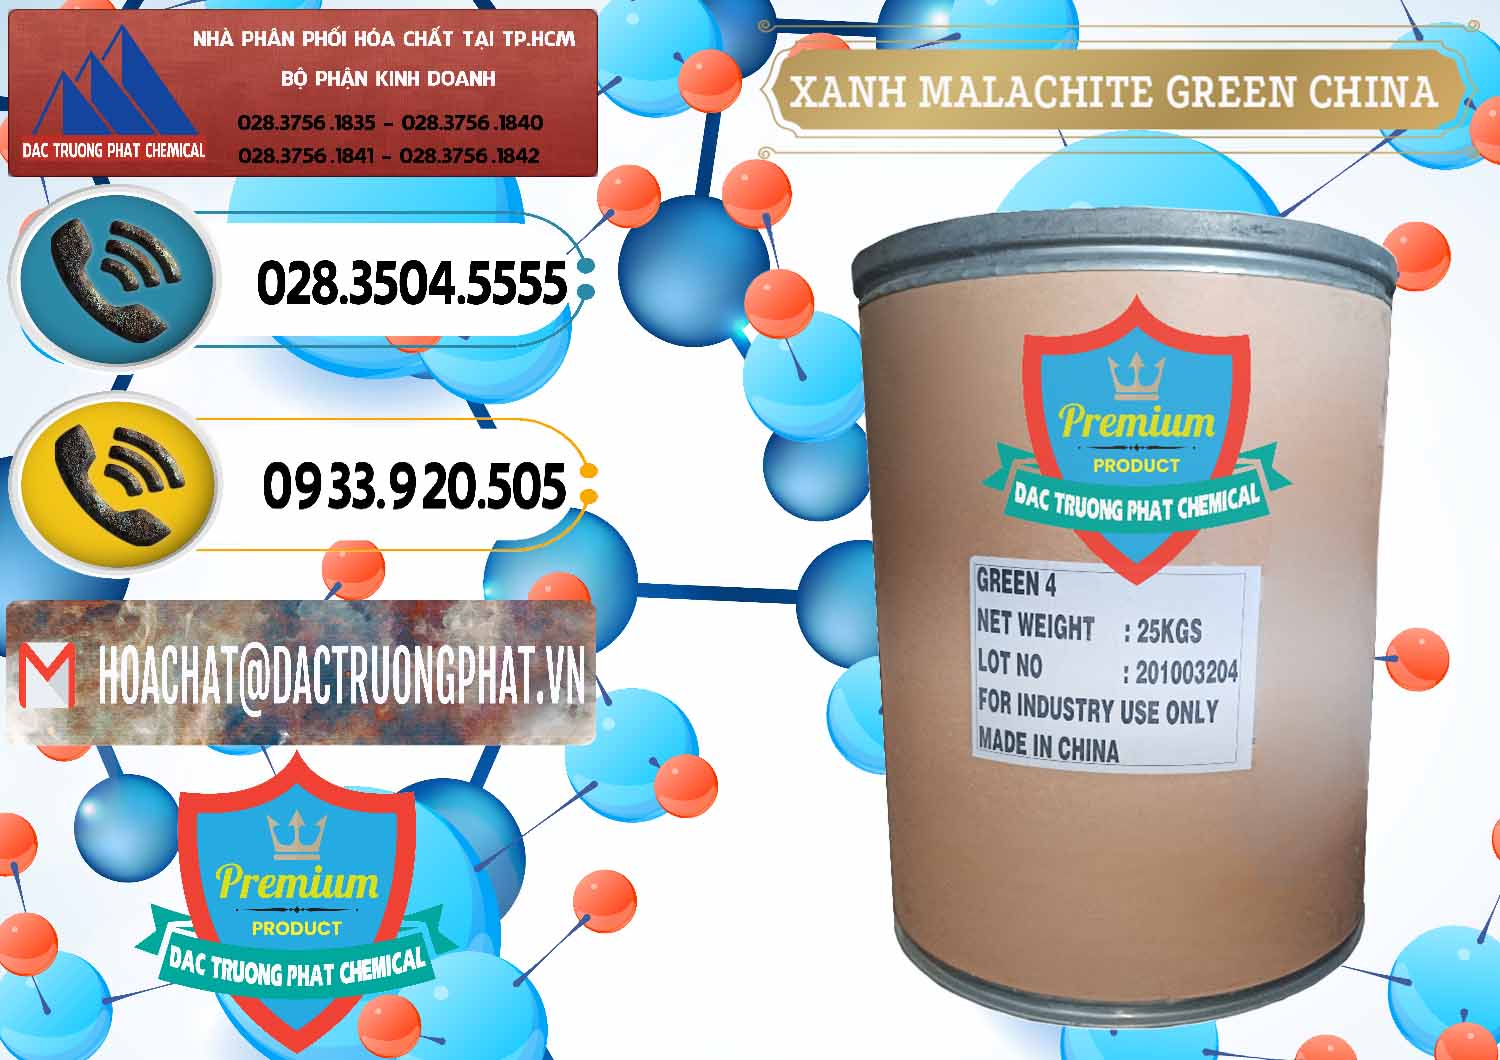 Chuyên bán và cung ứng Xanh Malachite Green Trung Quốc China - 0325 - Đơn vị chuyên bán ( phân phối ) hóa chất tại TP.HCM - hoachatdetnhuom.vn